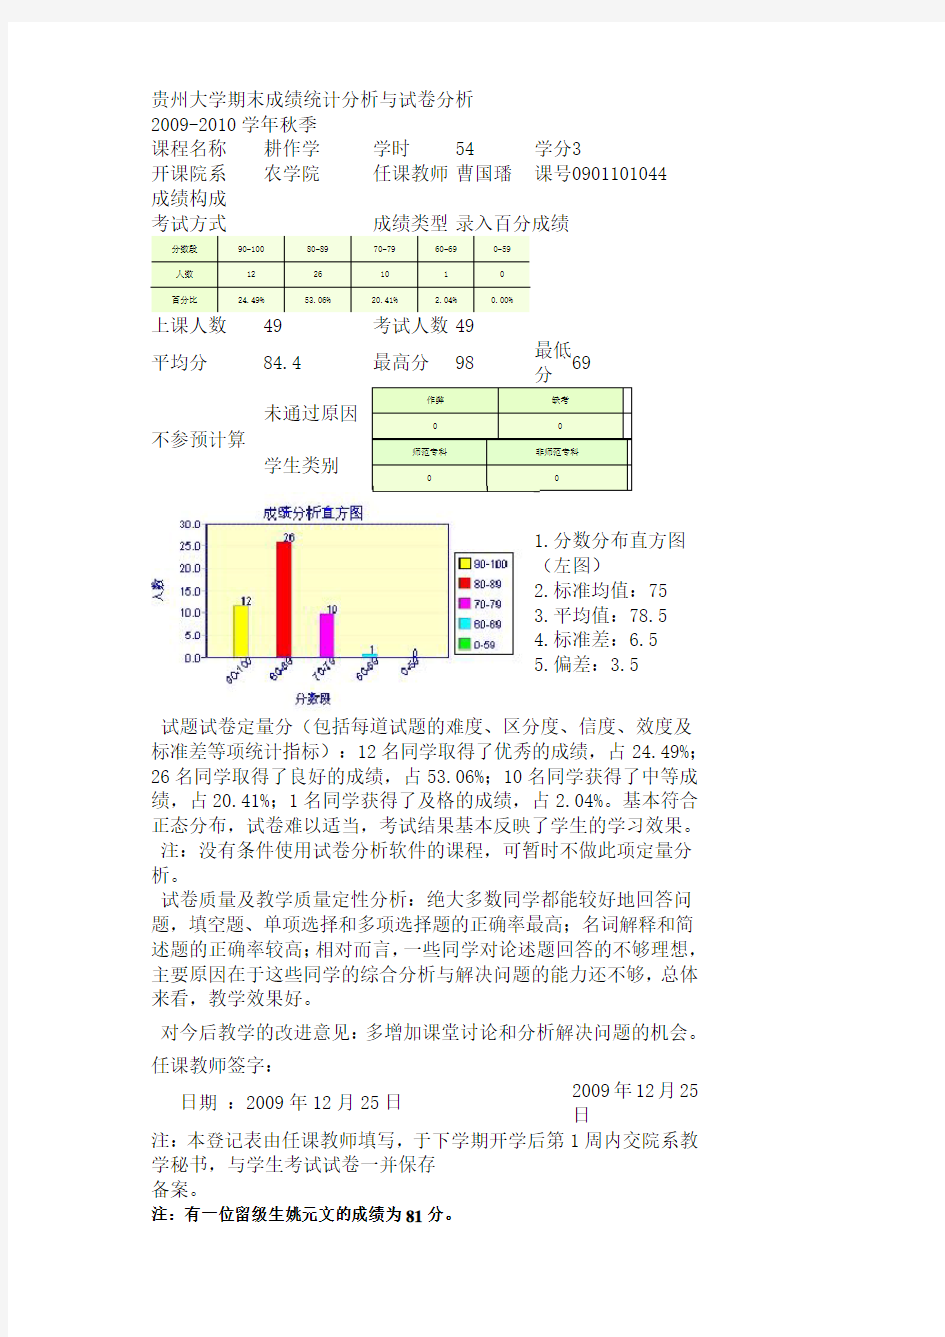 贵州大学期末成绩统计分析与试卷分析